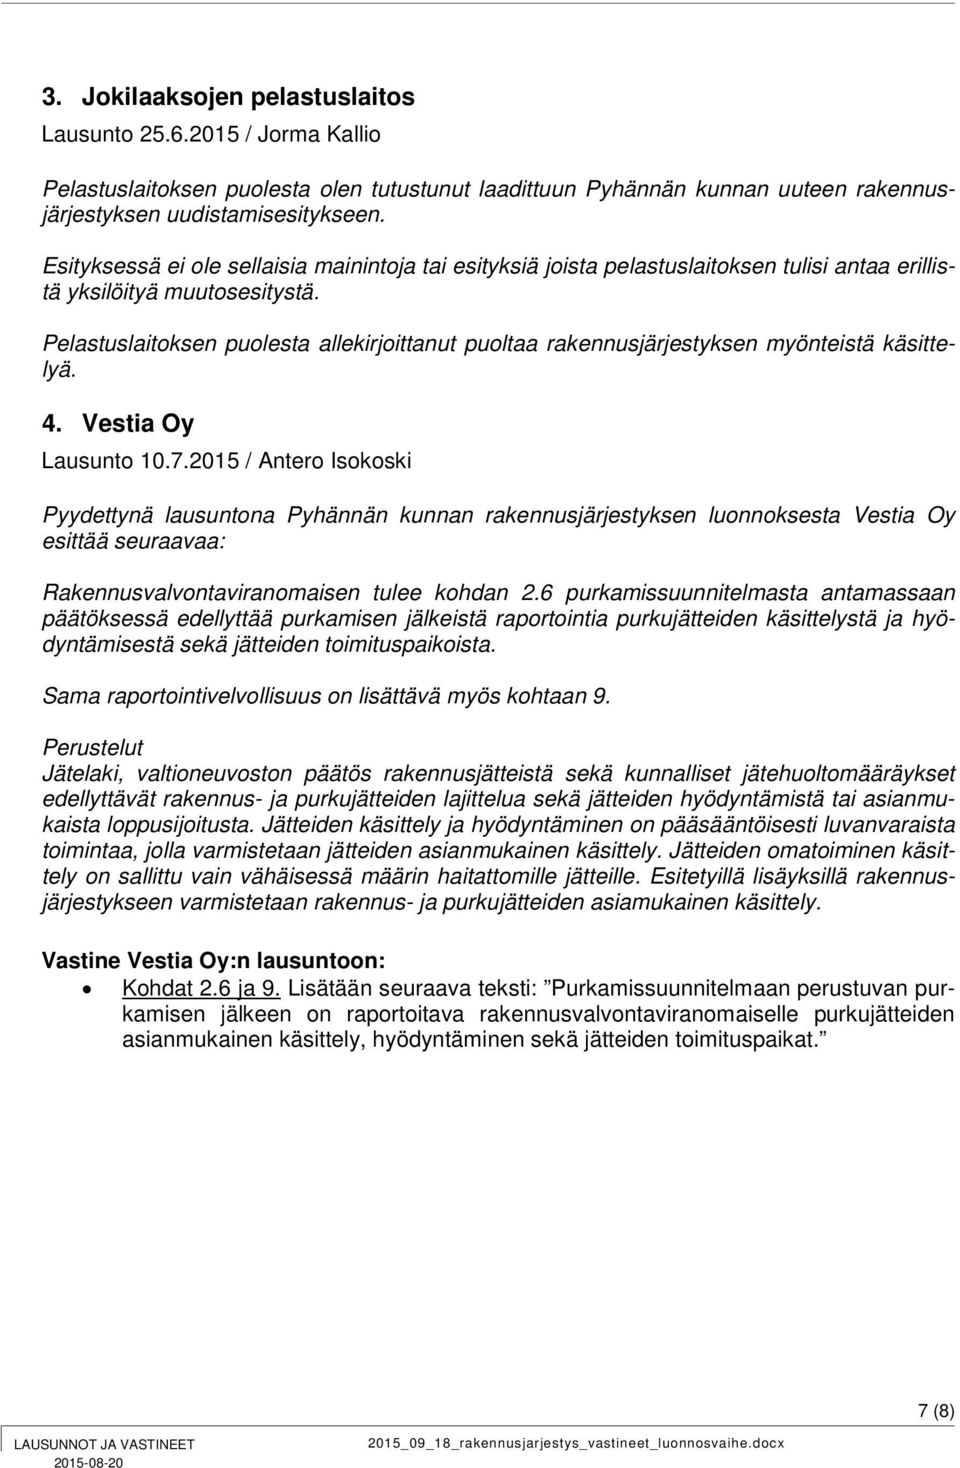 Pelastuslaitoksen puolesta allekirjoittanut puoltaa rakennusjärjestyksen myönteistä käsittelyä. 4. Vestia Oy Lausunto 10.7.